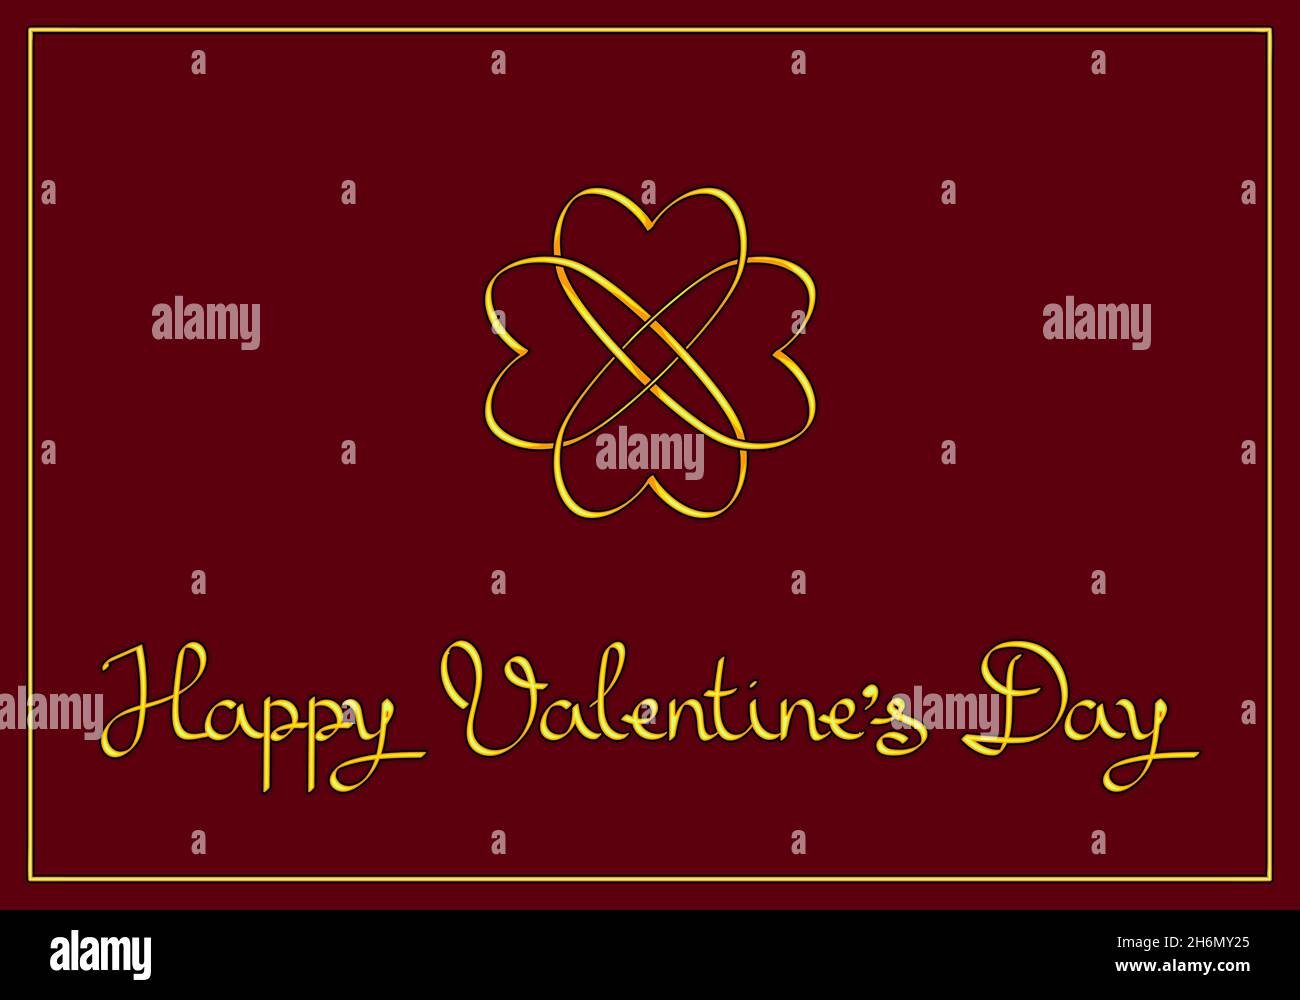 Elegante Valentinskarte: Eine Blume aus goldenen, verflochtenen Herzen und die Inschrift auf einem burgunderroten Hintergrund. Stock Vektor